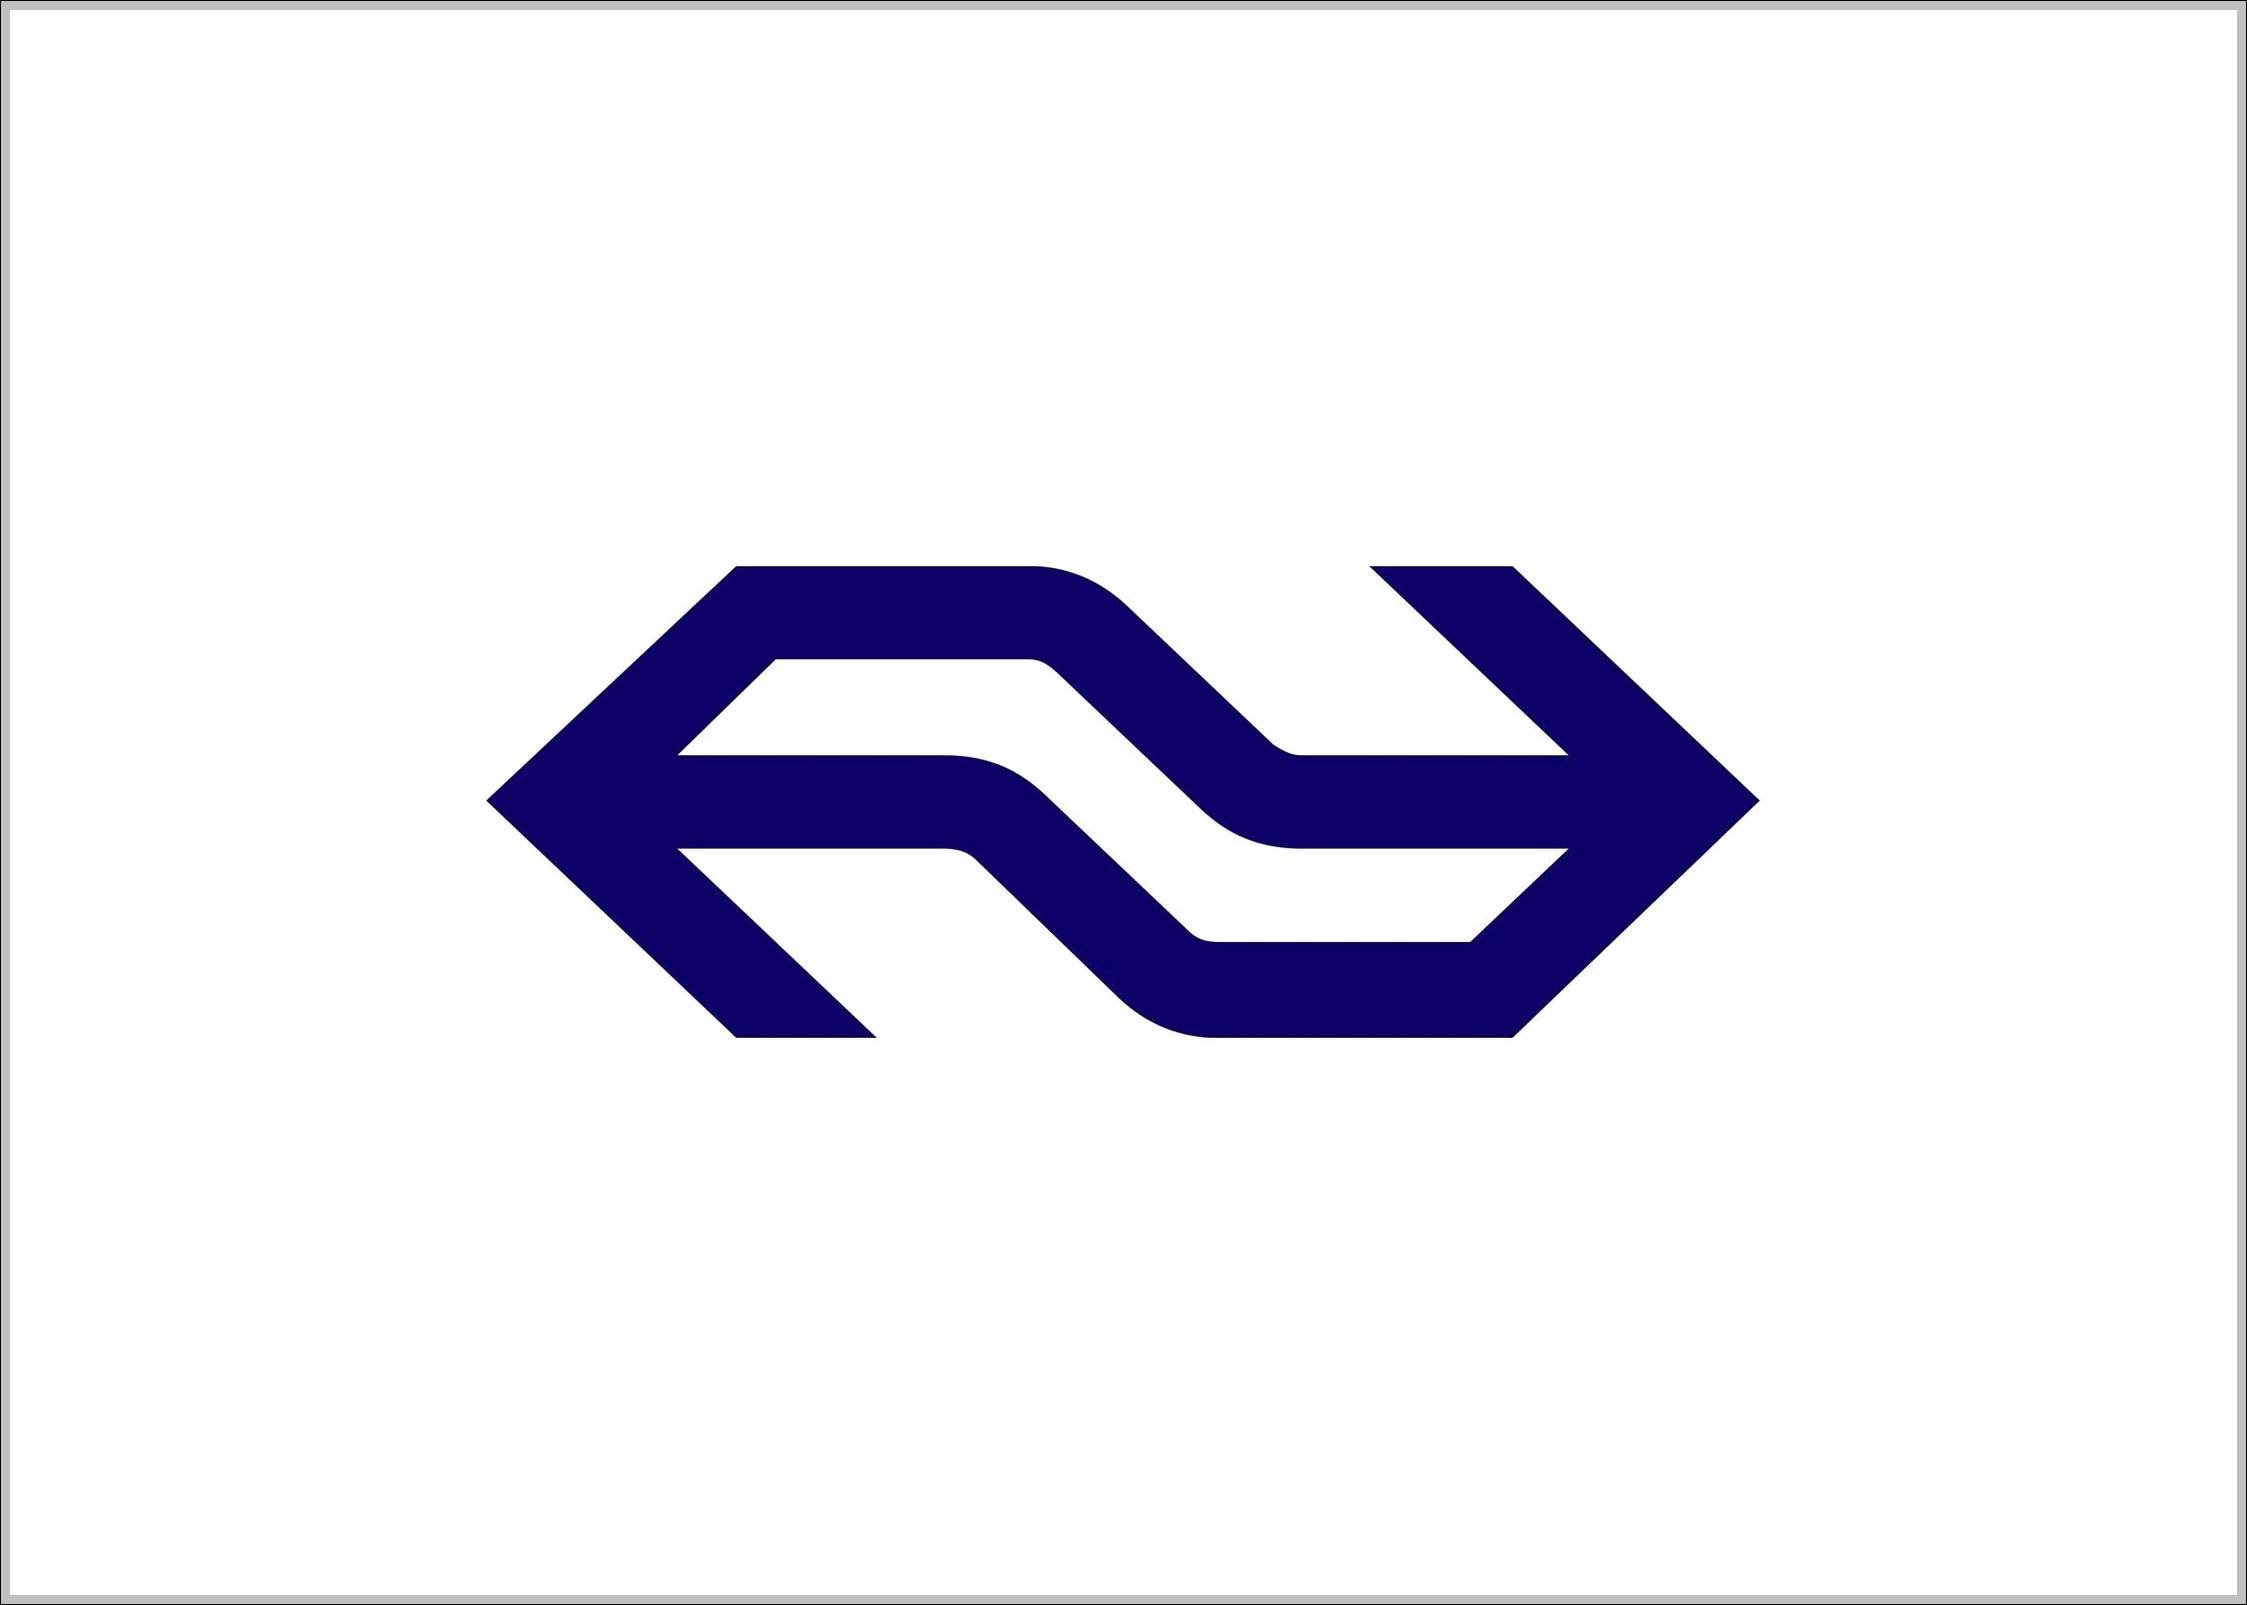 NS Logo - Nederlandse spoorwegen NS logo | Logo Sign - Logos, Signs, Symbols ...